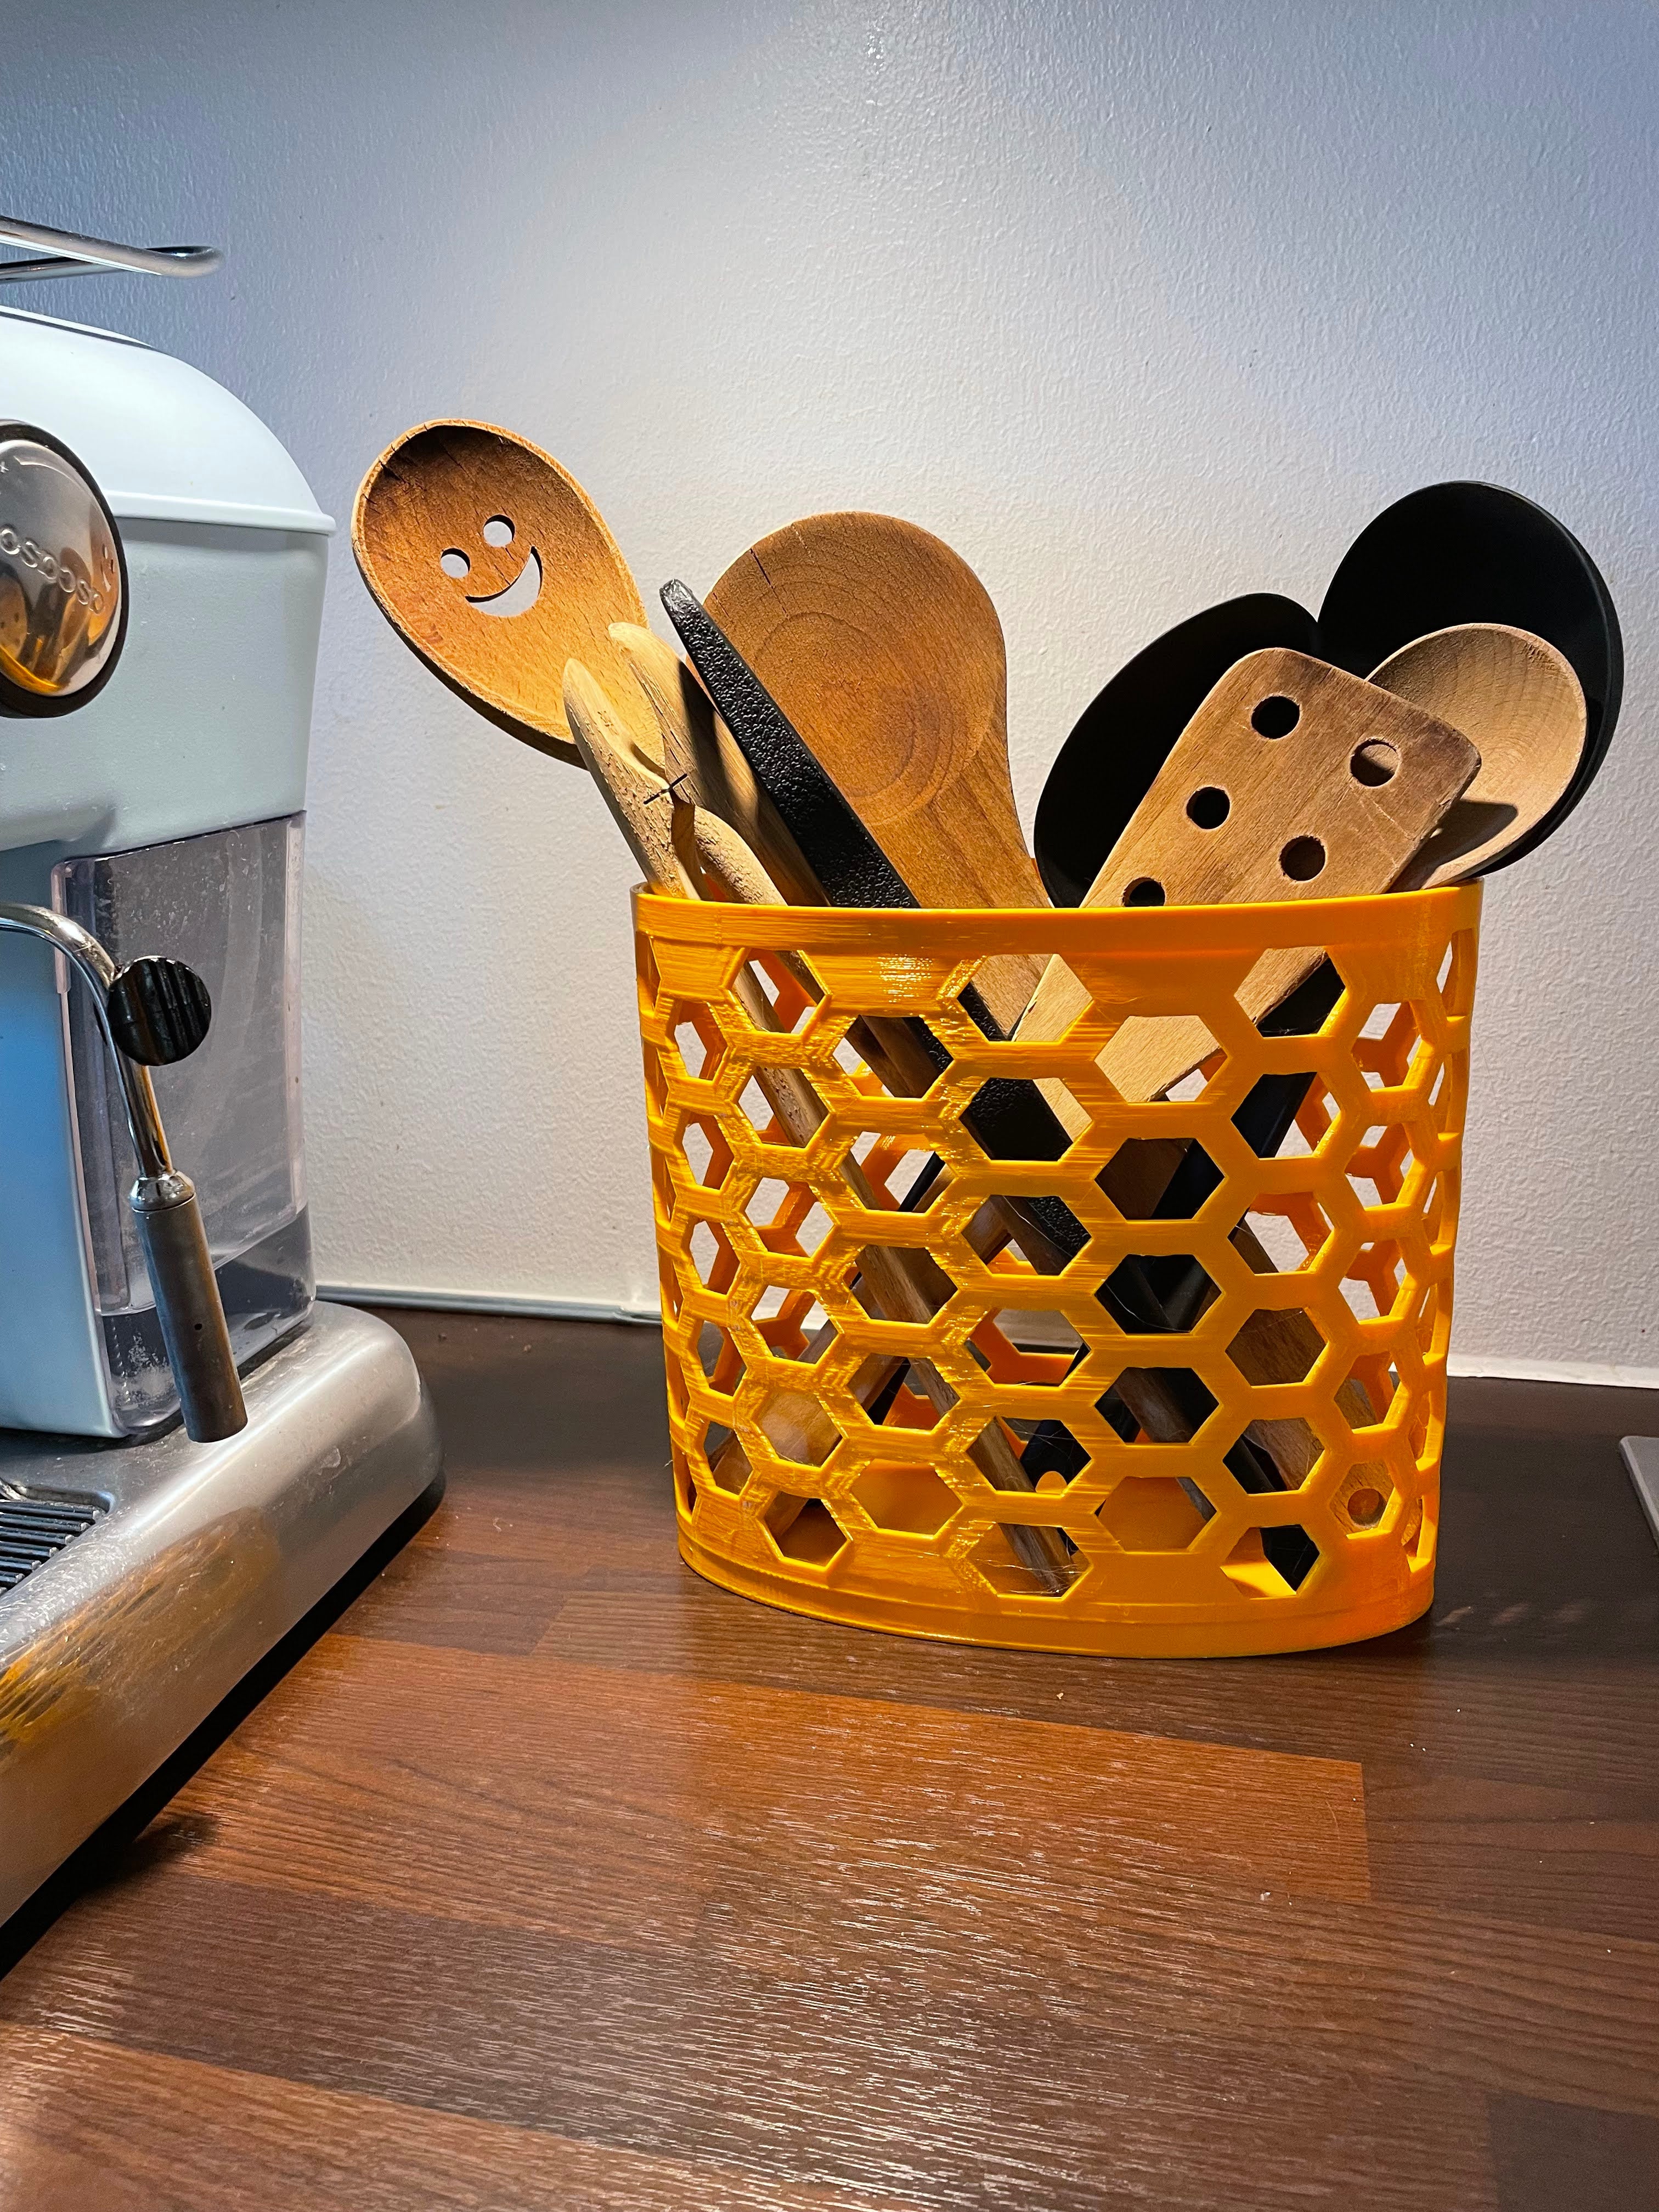 Kitchen utensil holder in sleek design